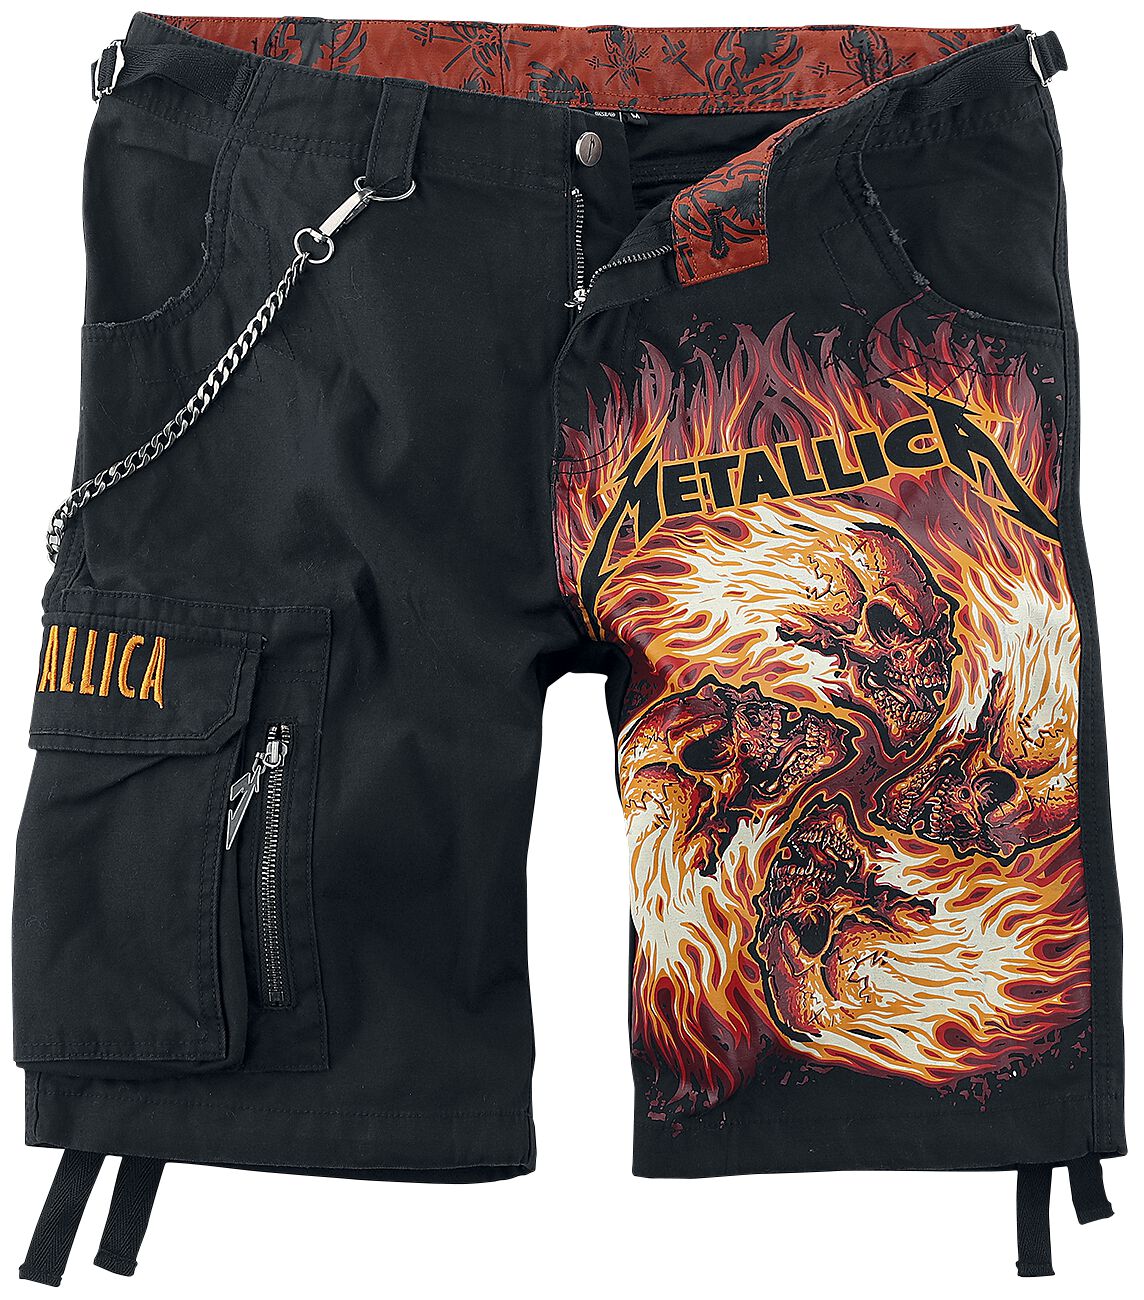 Metallica Short - EMP Signature Collection - M bis 4XL - für Männer - Größe L - schwarz  - EMP exklusives Merchandise!